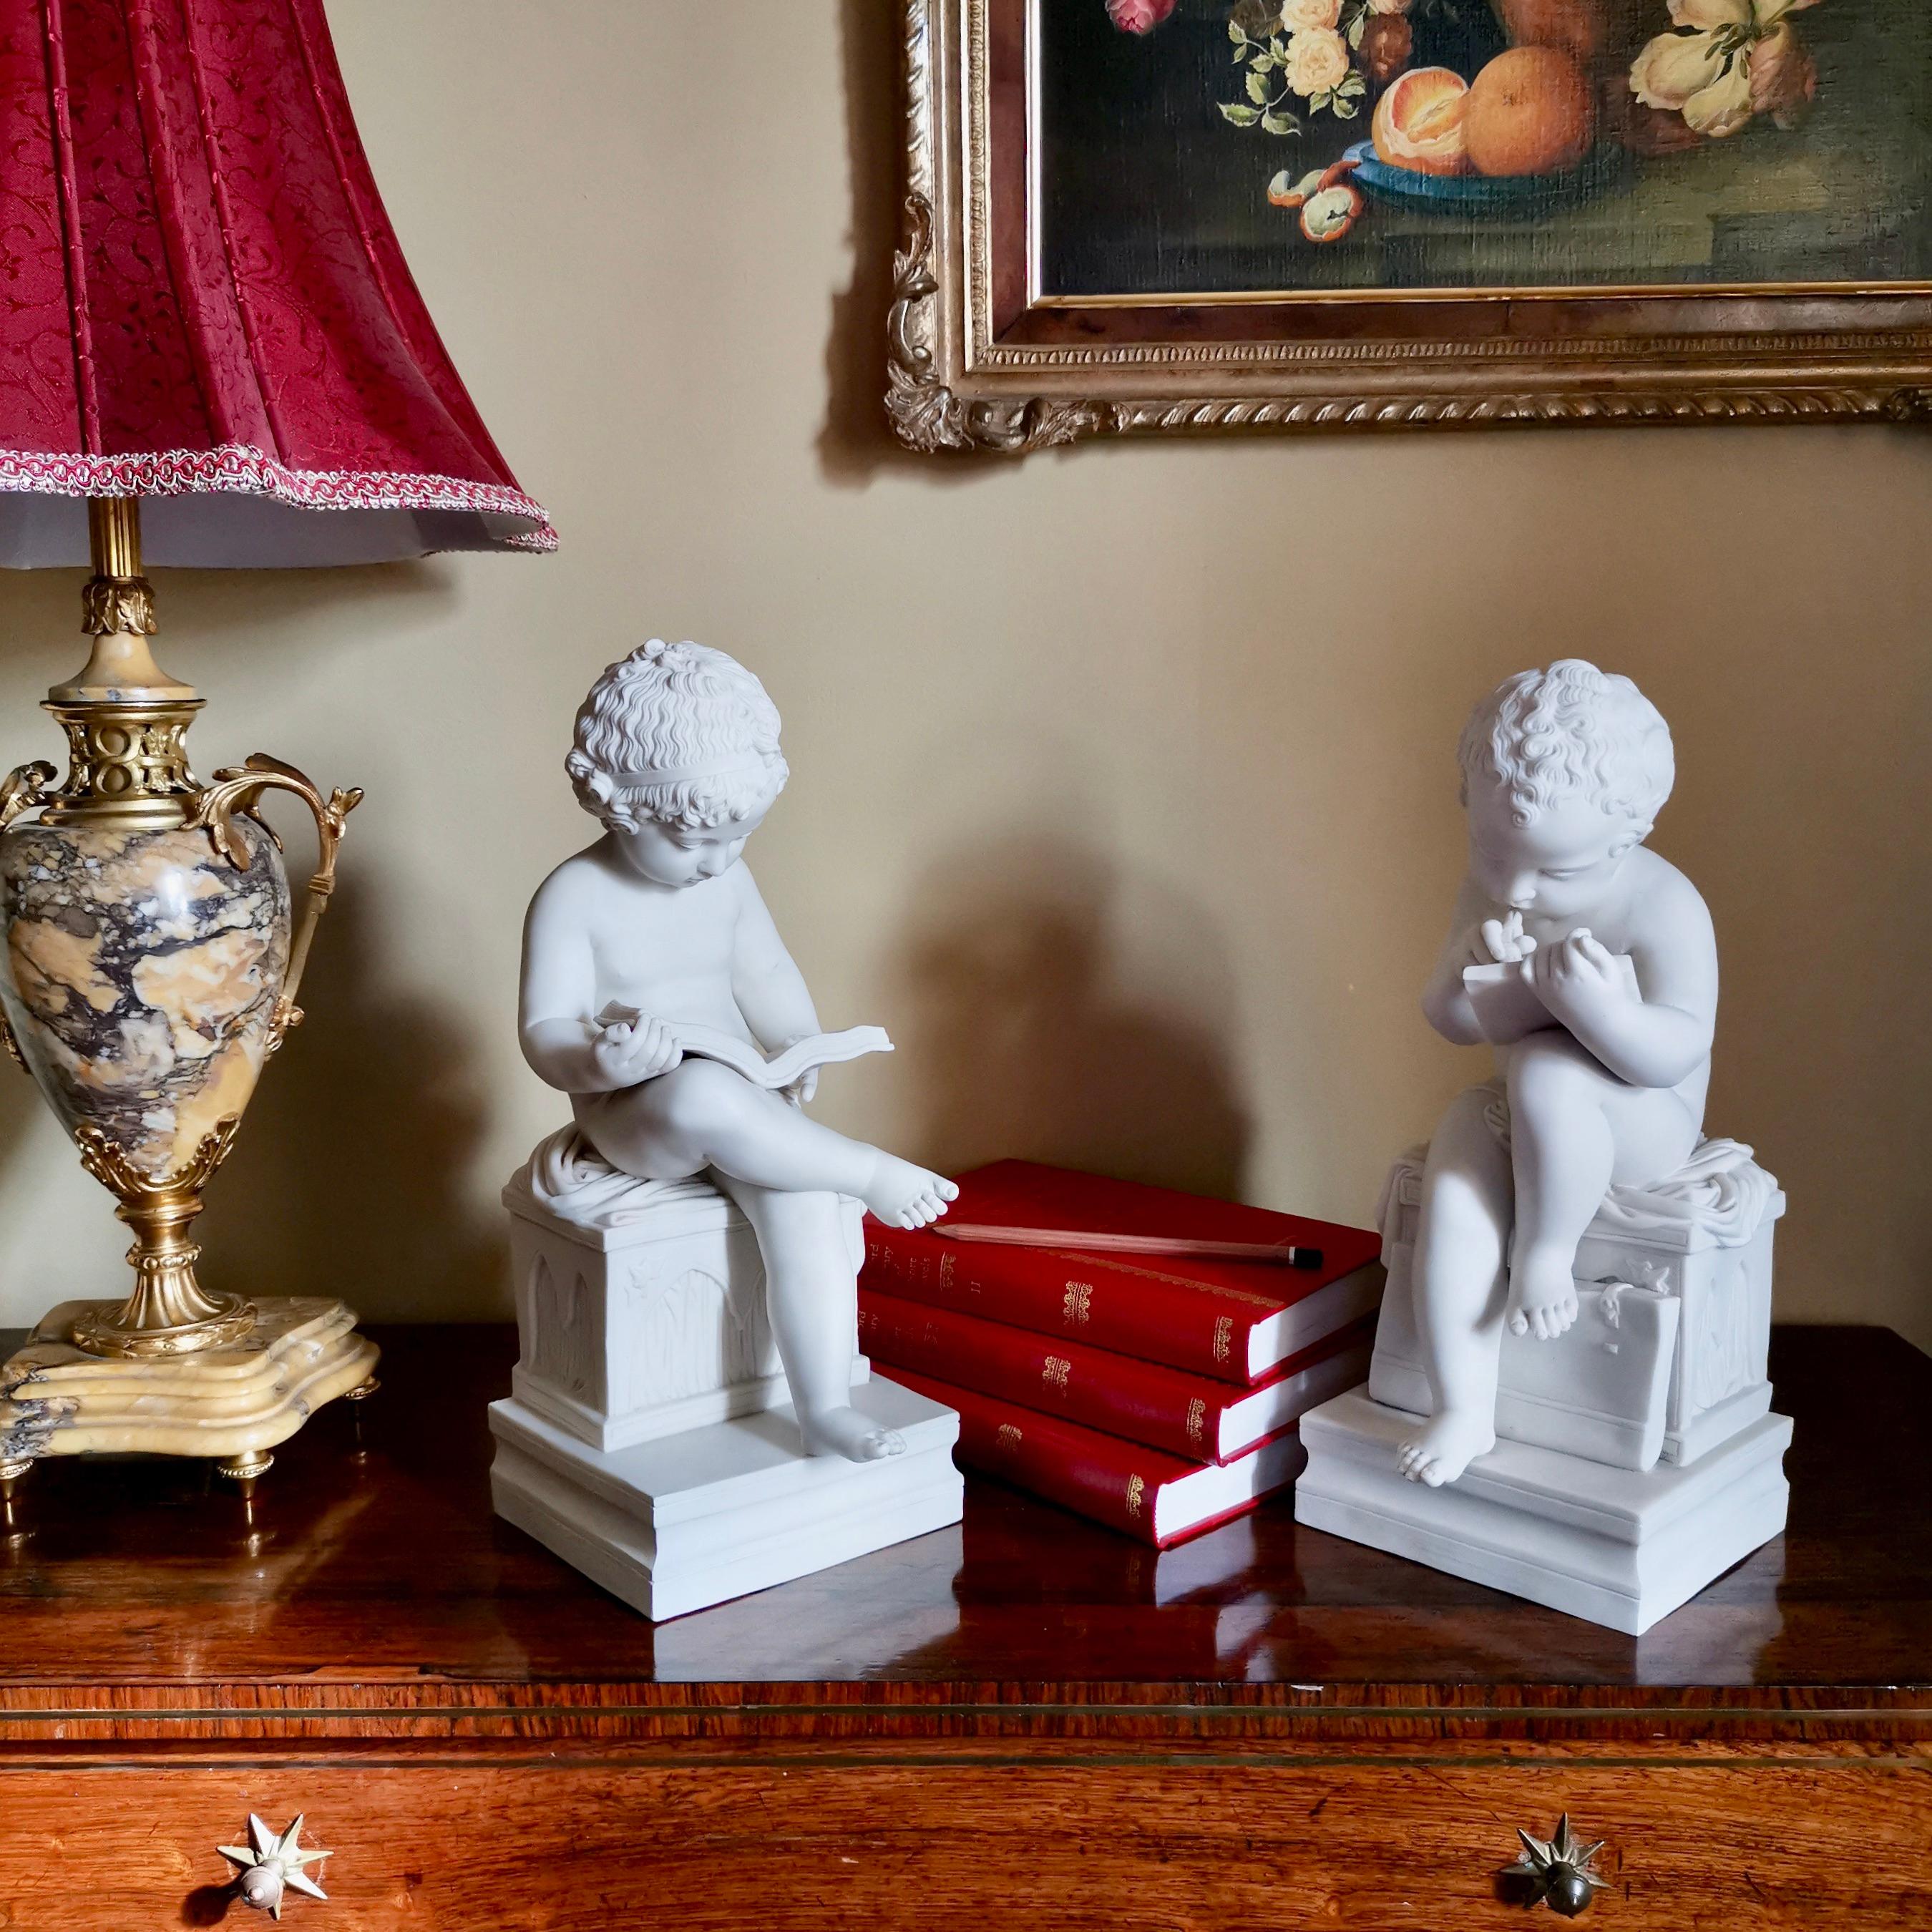 Nous vous proposons une superbe paire de figurines en parian blanc, probablement anglaises et fabriquées dans le Staffordshire à la fin du XIXe siècle. Les figures sont inspirées d'une paire de modèles en bronze créés par Charles-Gabriel Sauvage,